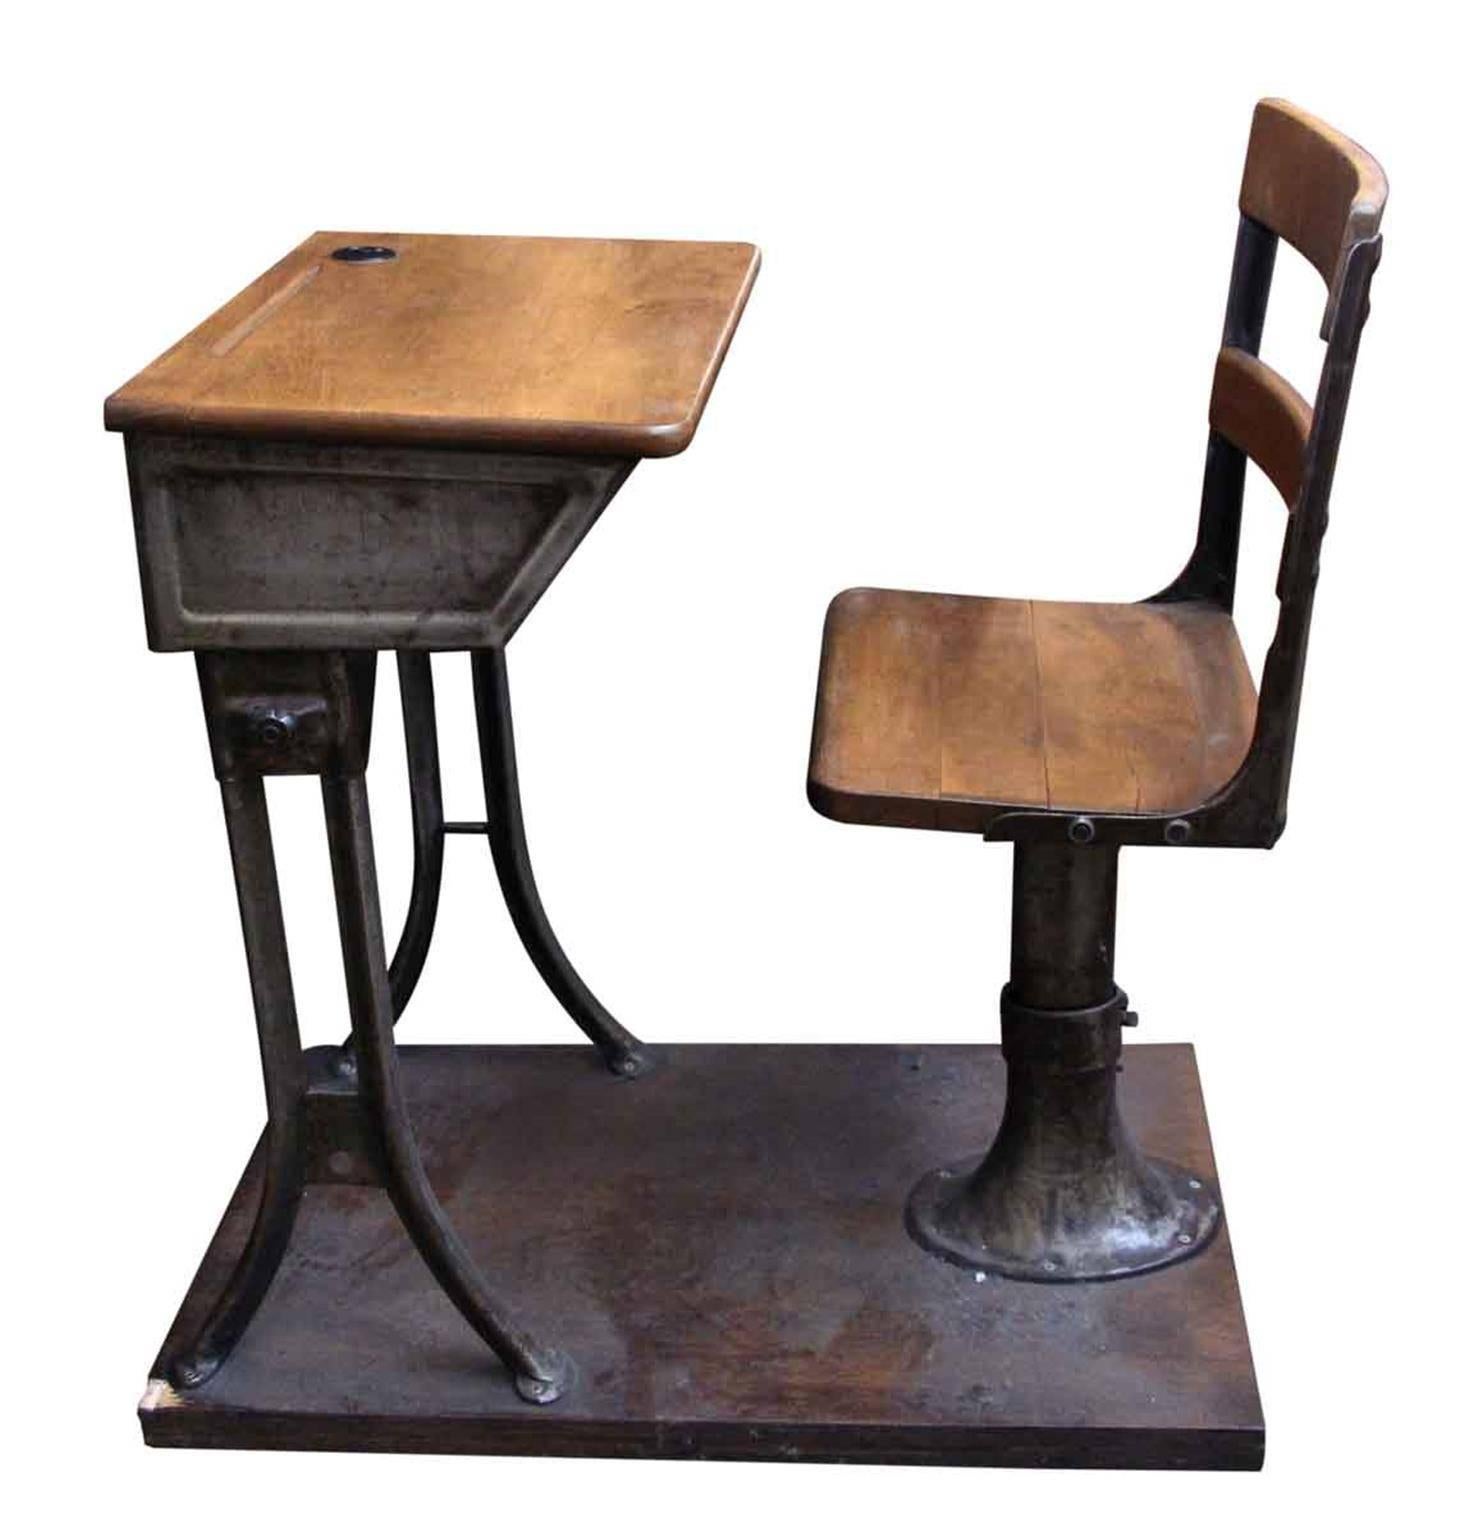 1910 school desk